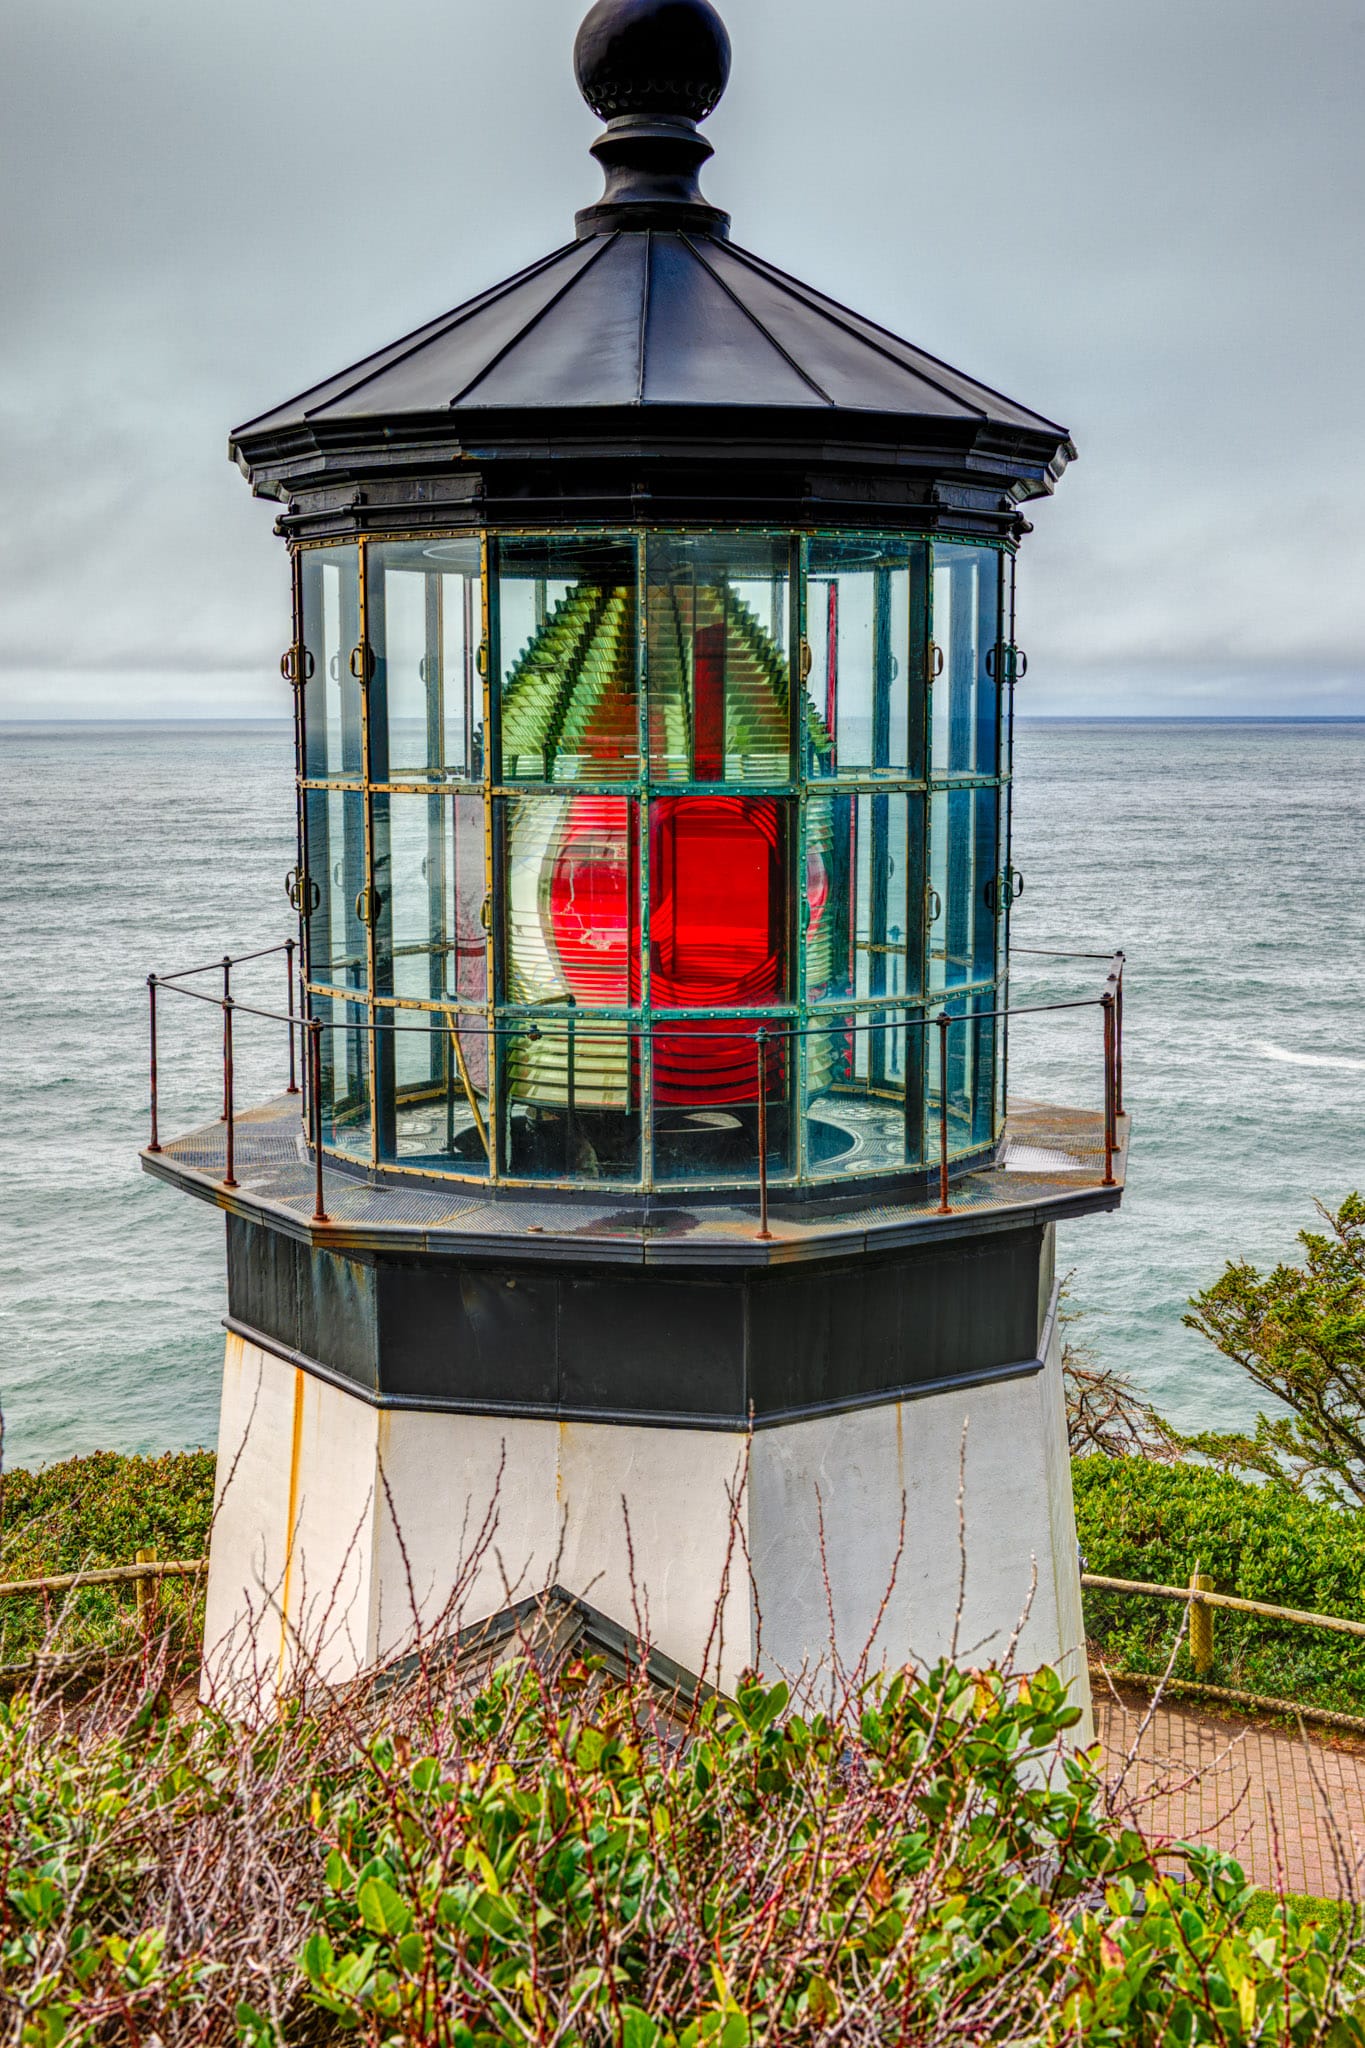 Cape Meares Lighthouse - Oregon's Pacific coast